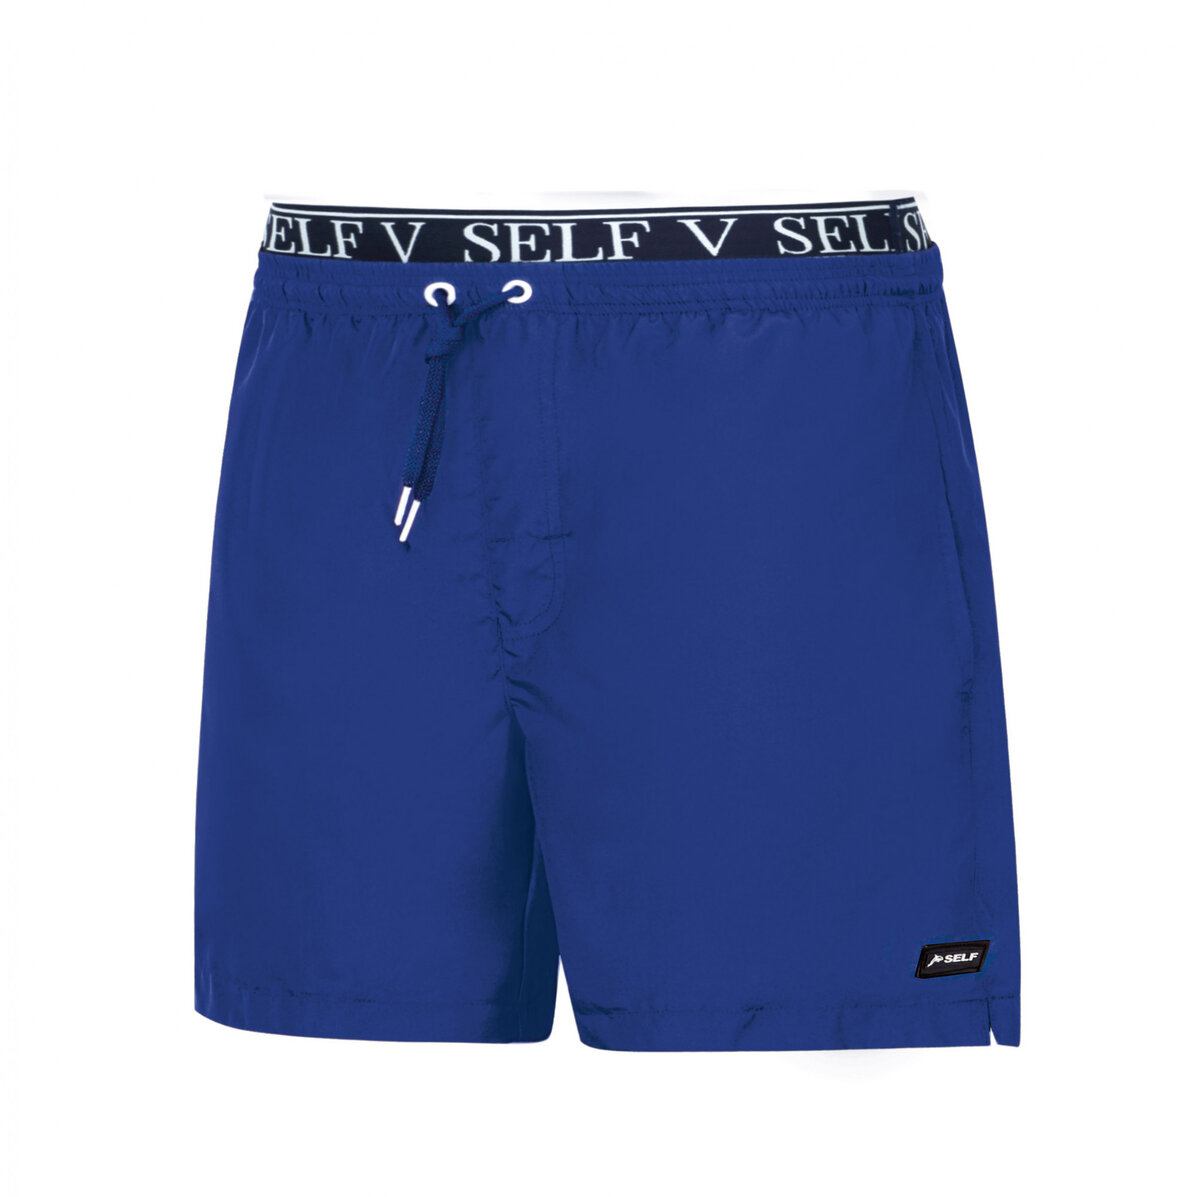 Letní pánské plavky Modré Shorts - Self, L i10_P64098_2:90_